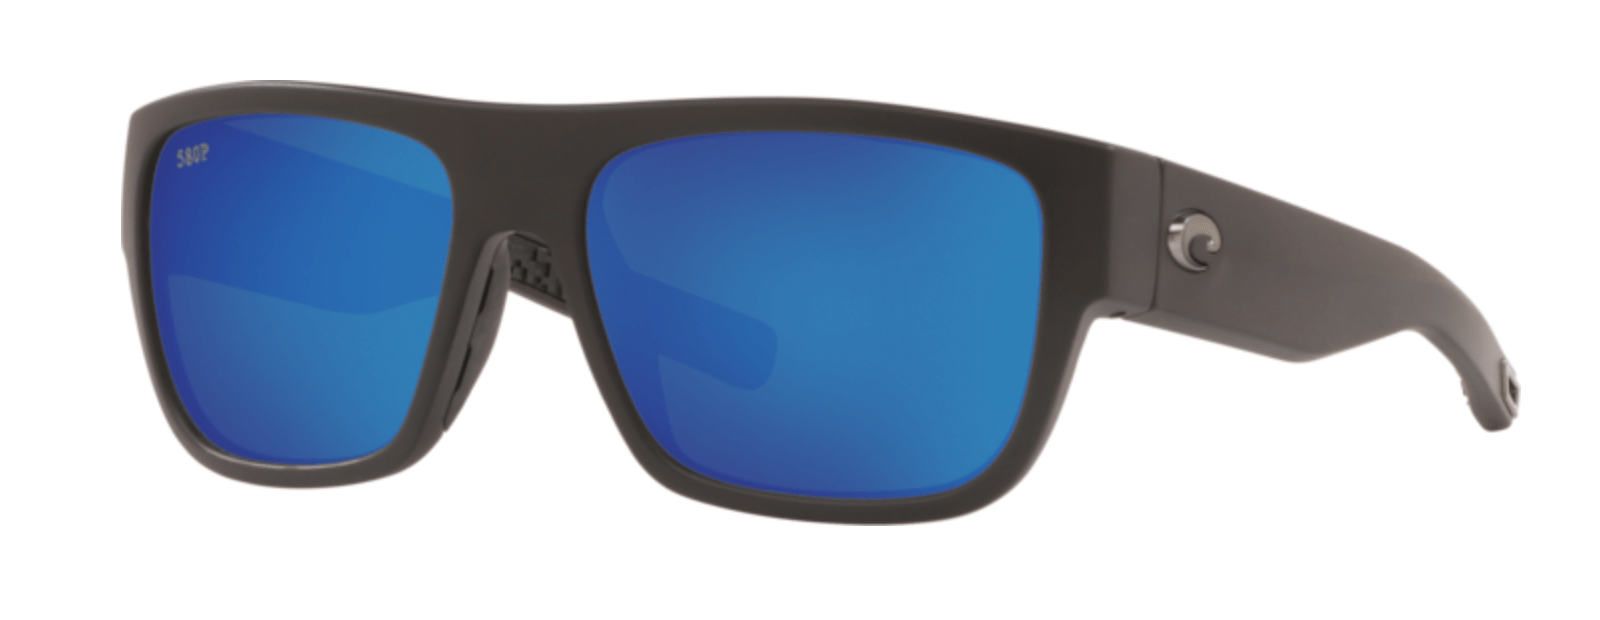 Costa Del Mar Sampan Polarized Sunglasses (580P - Polycarbonate Lenses) Matte Black - Blue Mirror (MH1 11 OBMP)